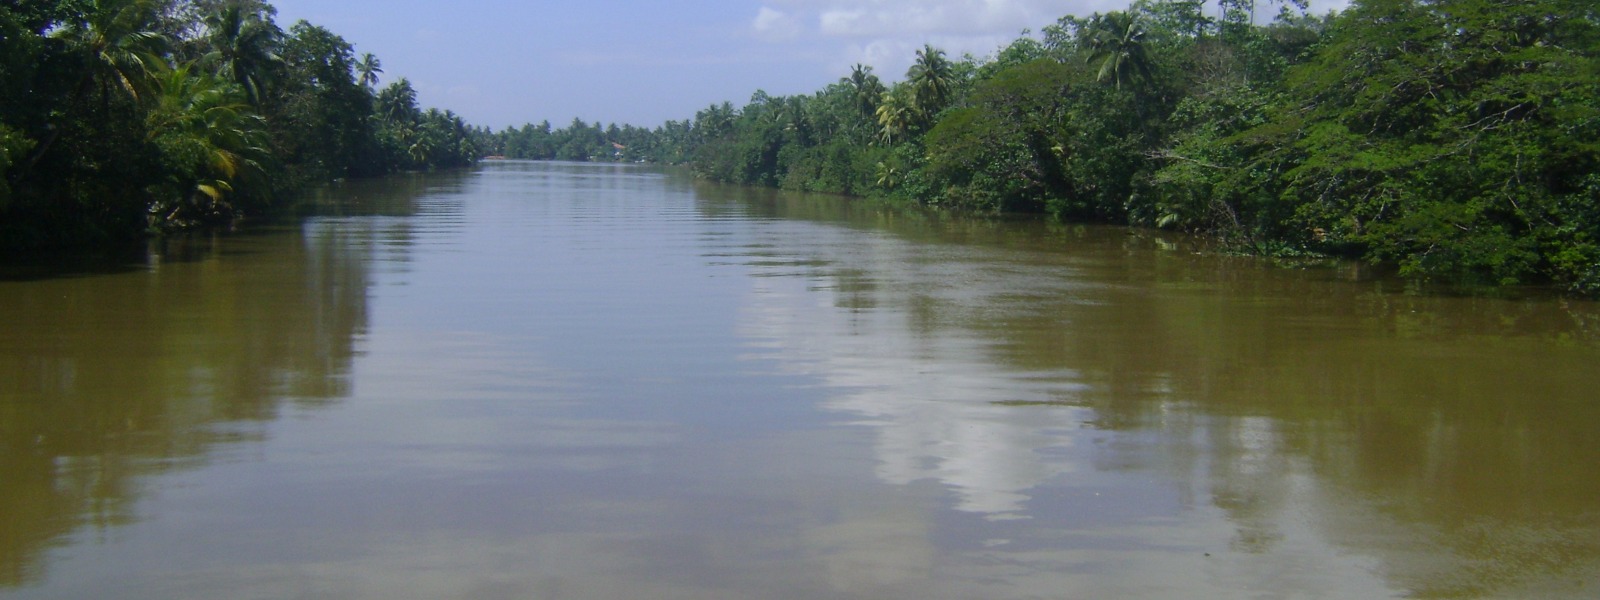 Water level of Kalu Ganga remains at minor flood level